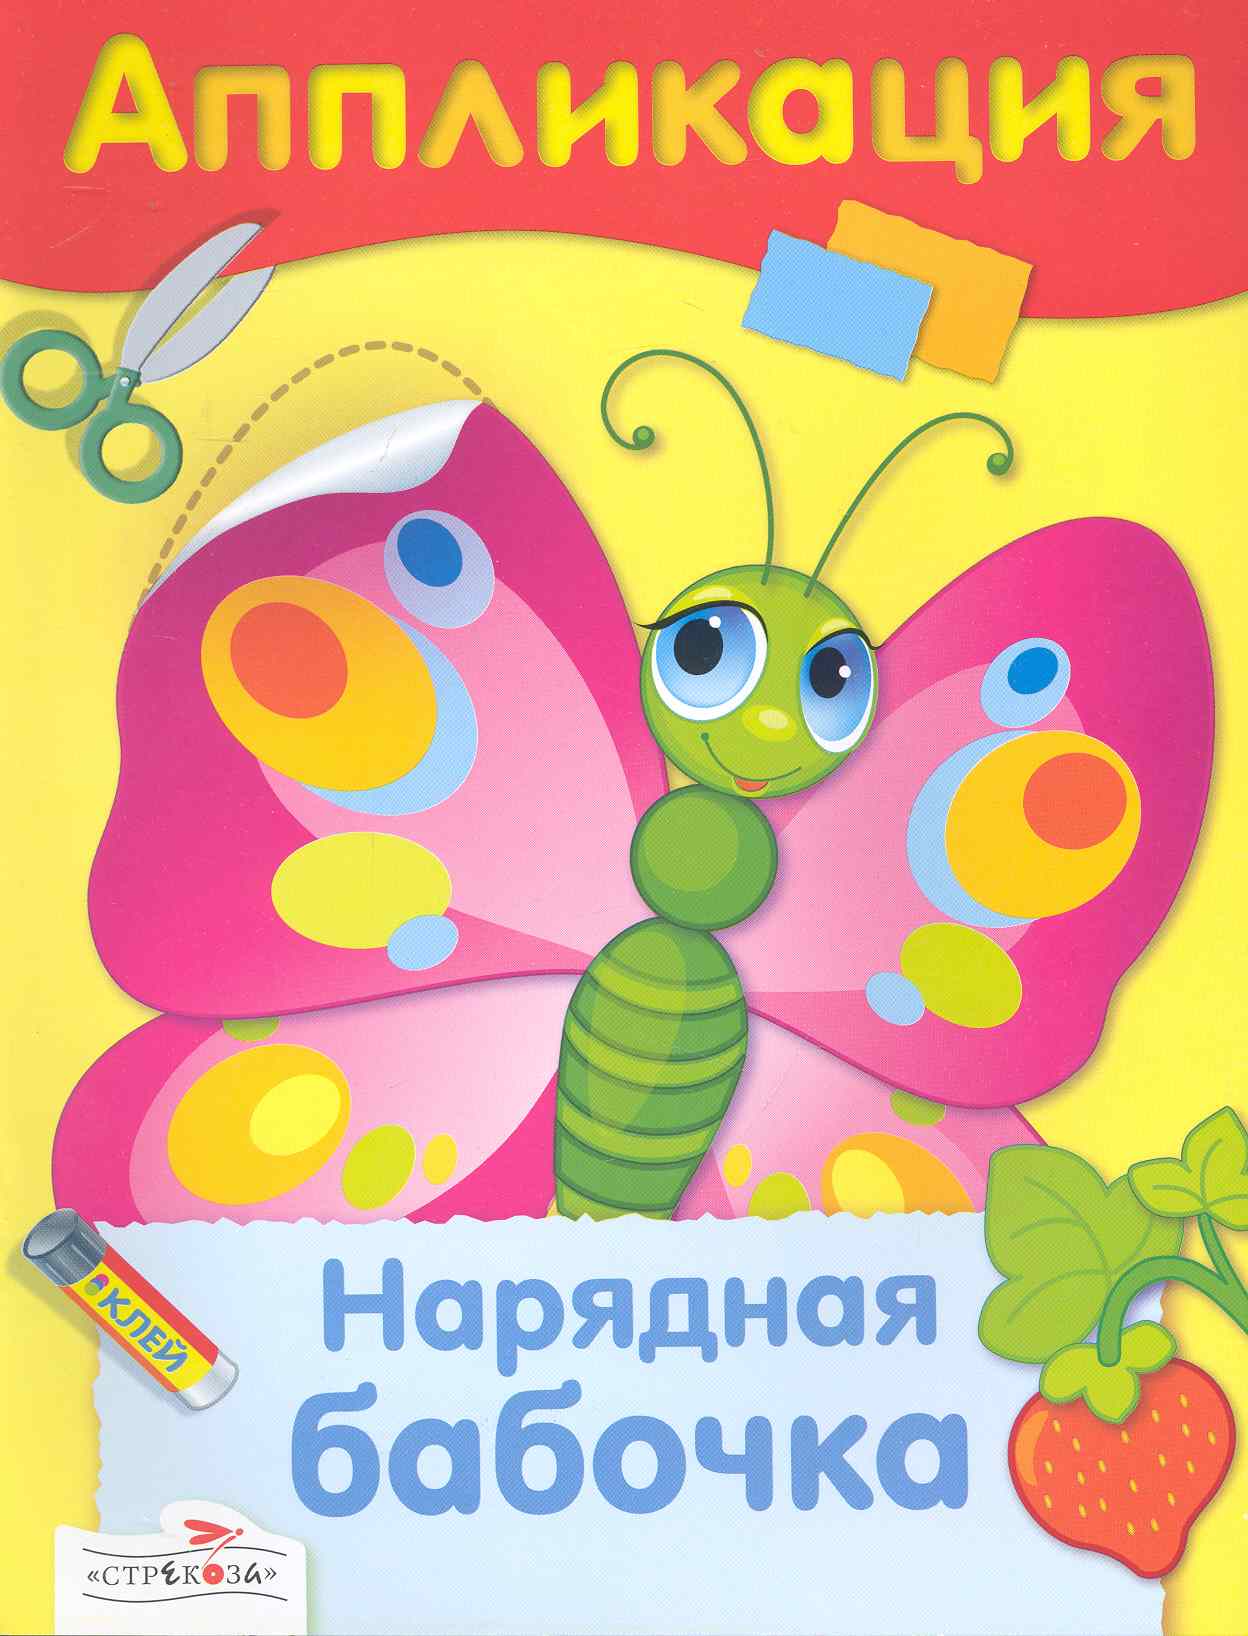 гончарова д худ аппликация нарядная бабочка Нарядная бабочка : аппликация